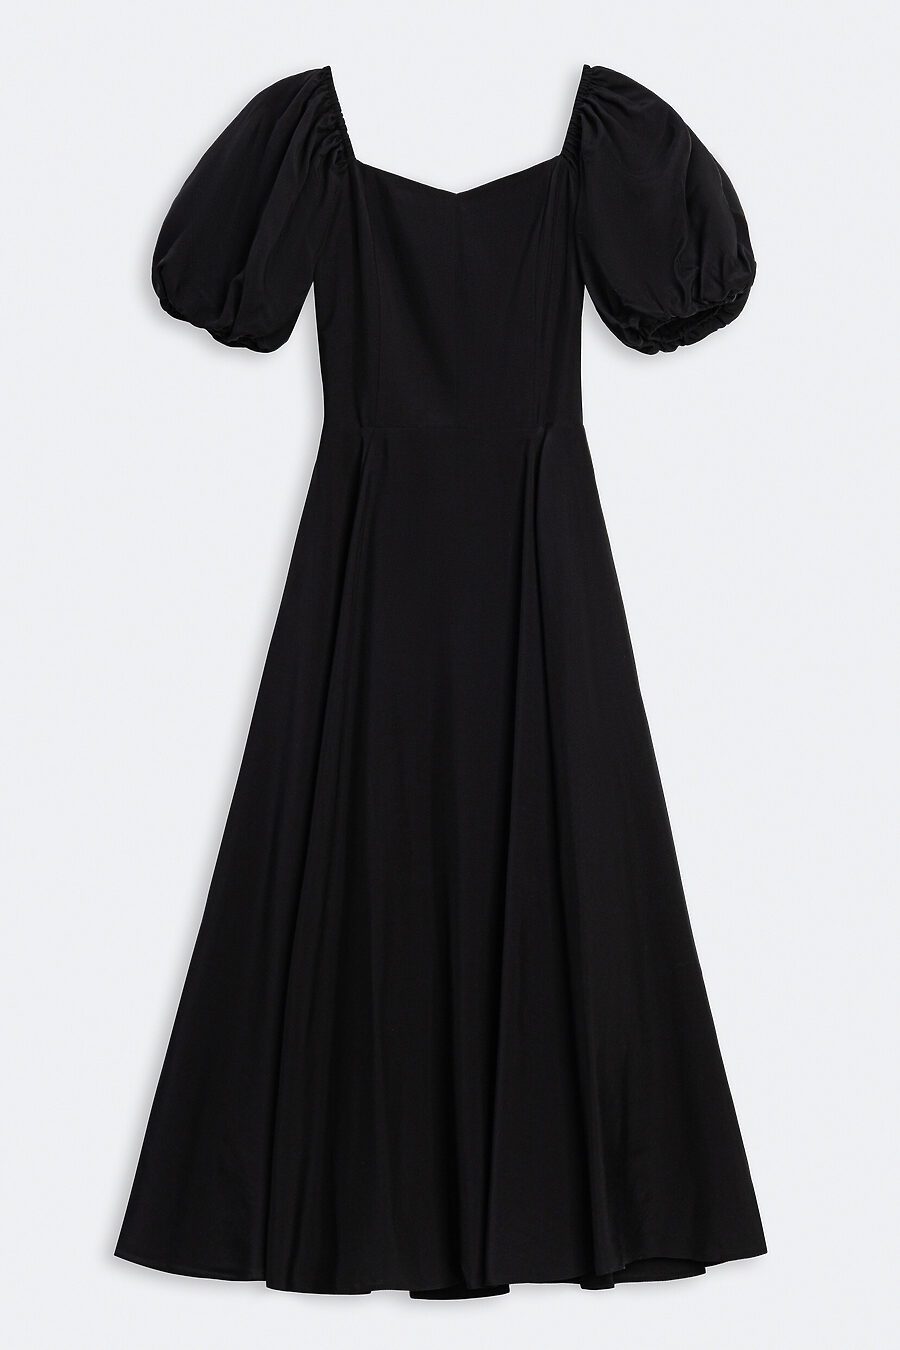 Платье  для женщин CALISTA 785439 купить оптом от производителя. Совместная покупка женской одежды в OptMoyo